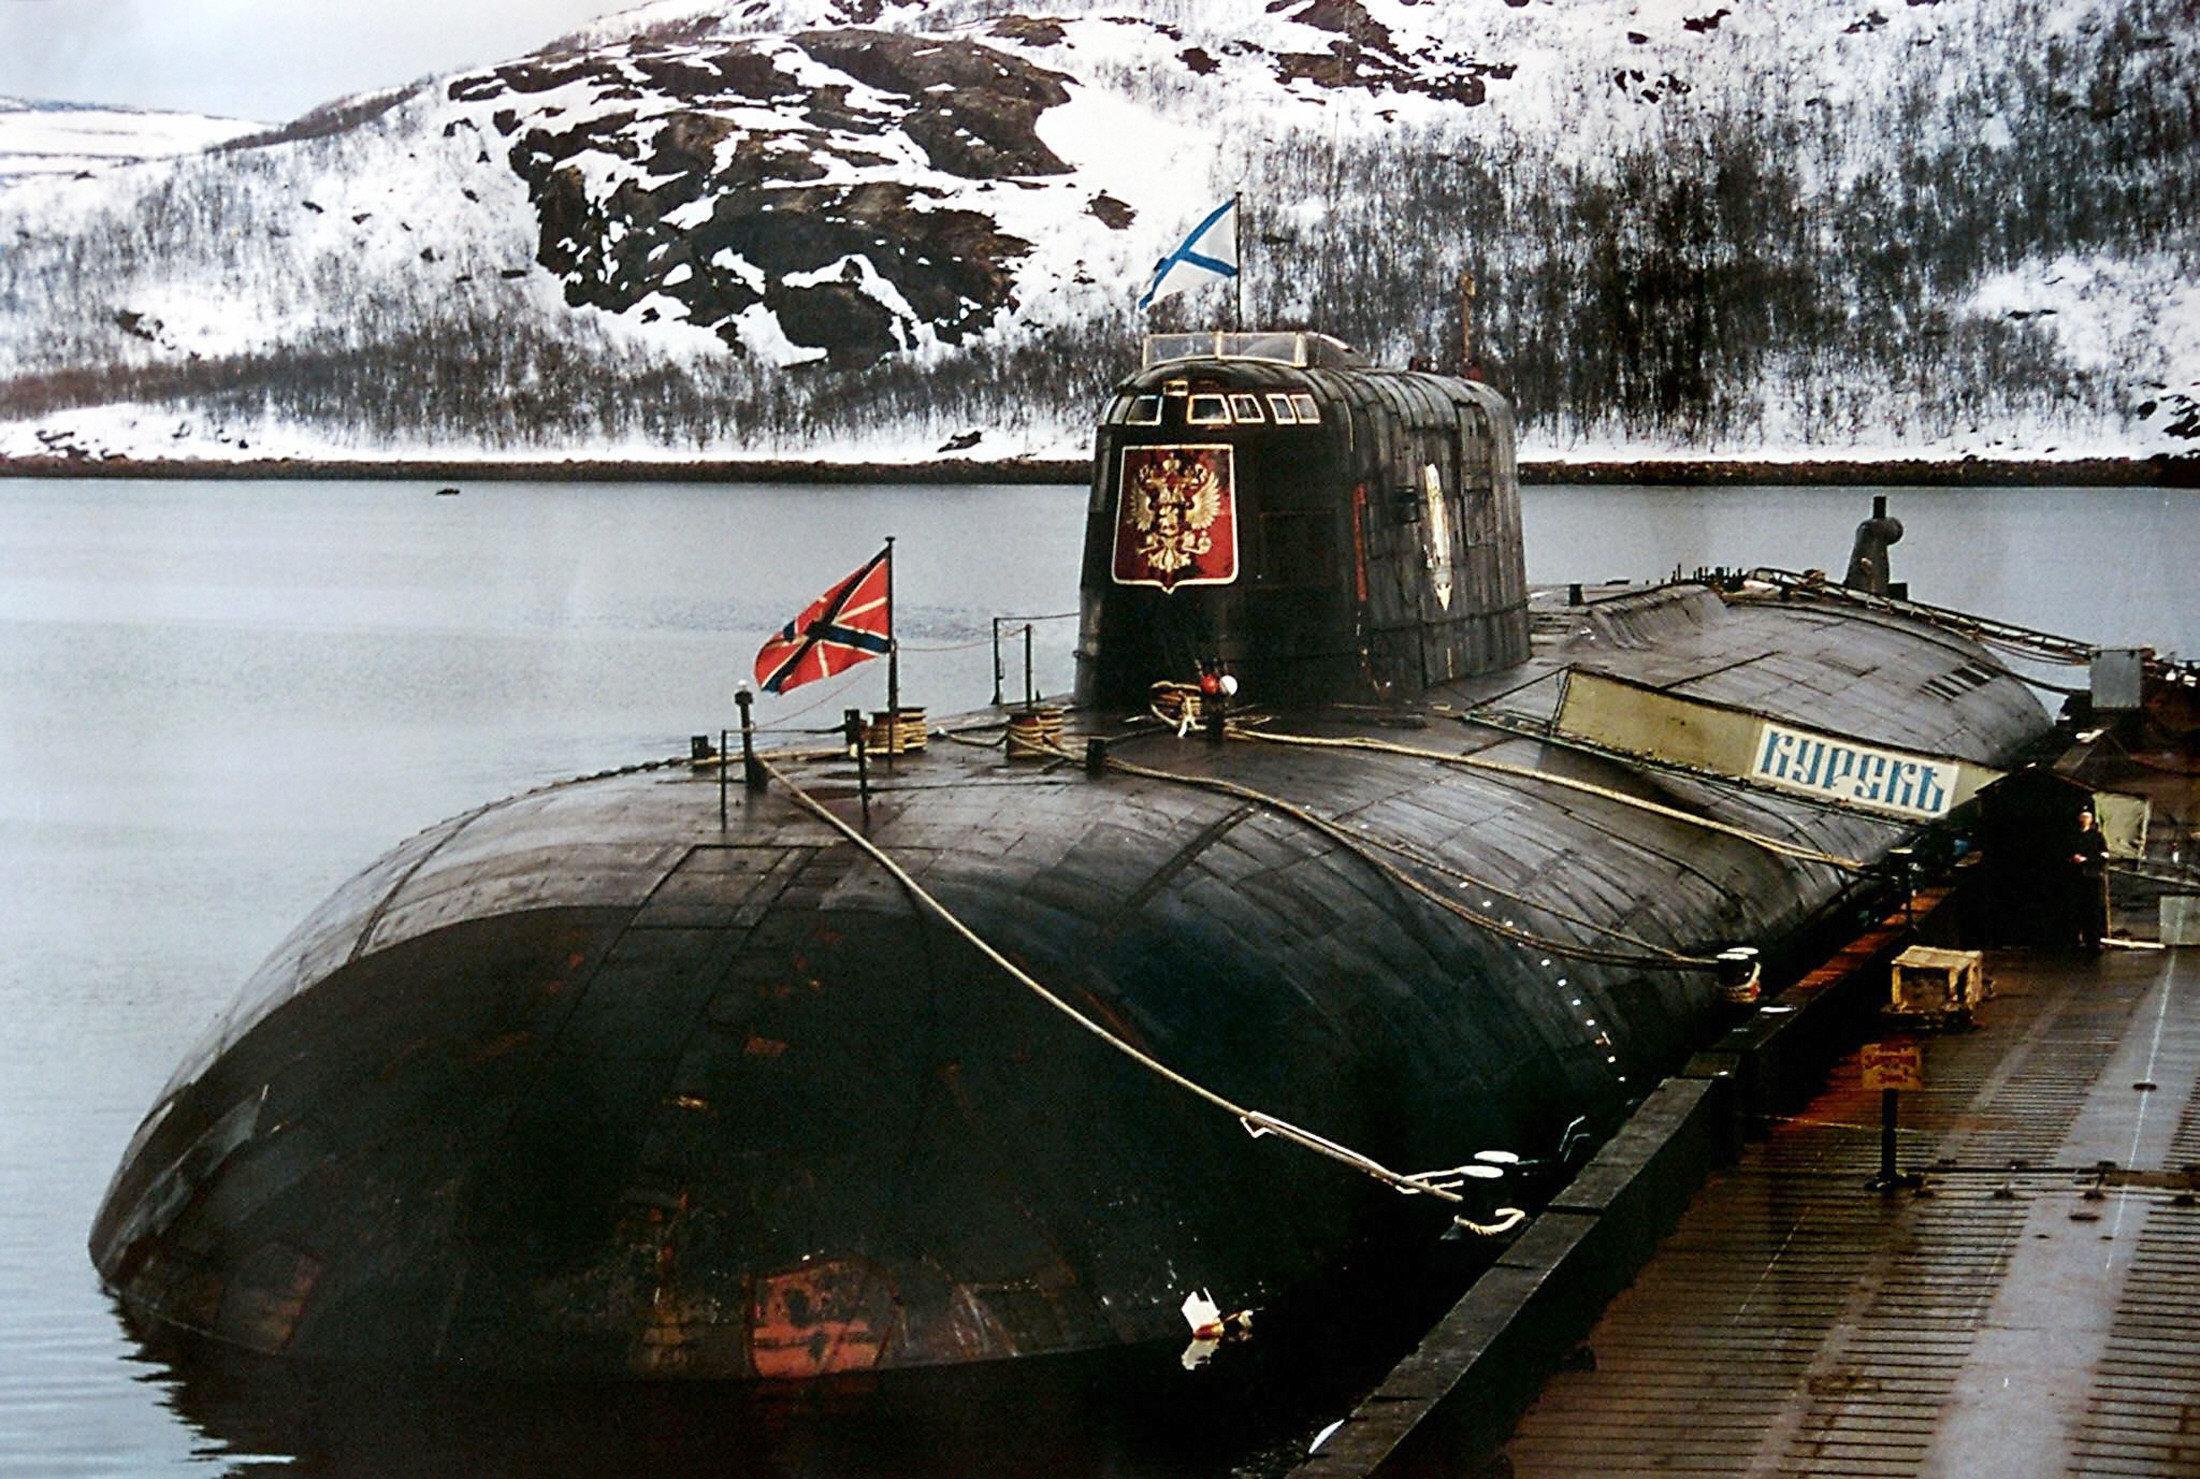 潜艇,是单艇火力强大的海军武器装备,也是世界上最大的战术核潜艇之一